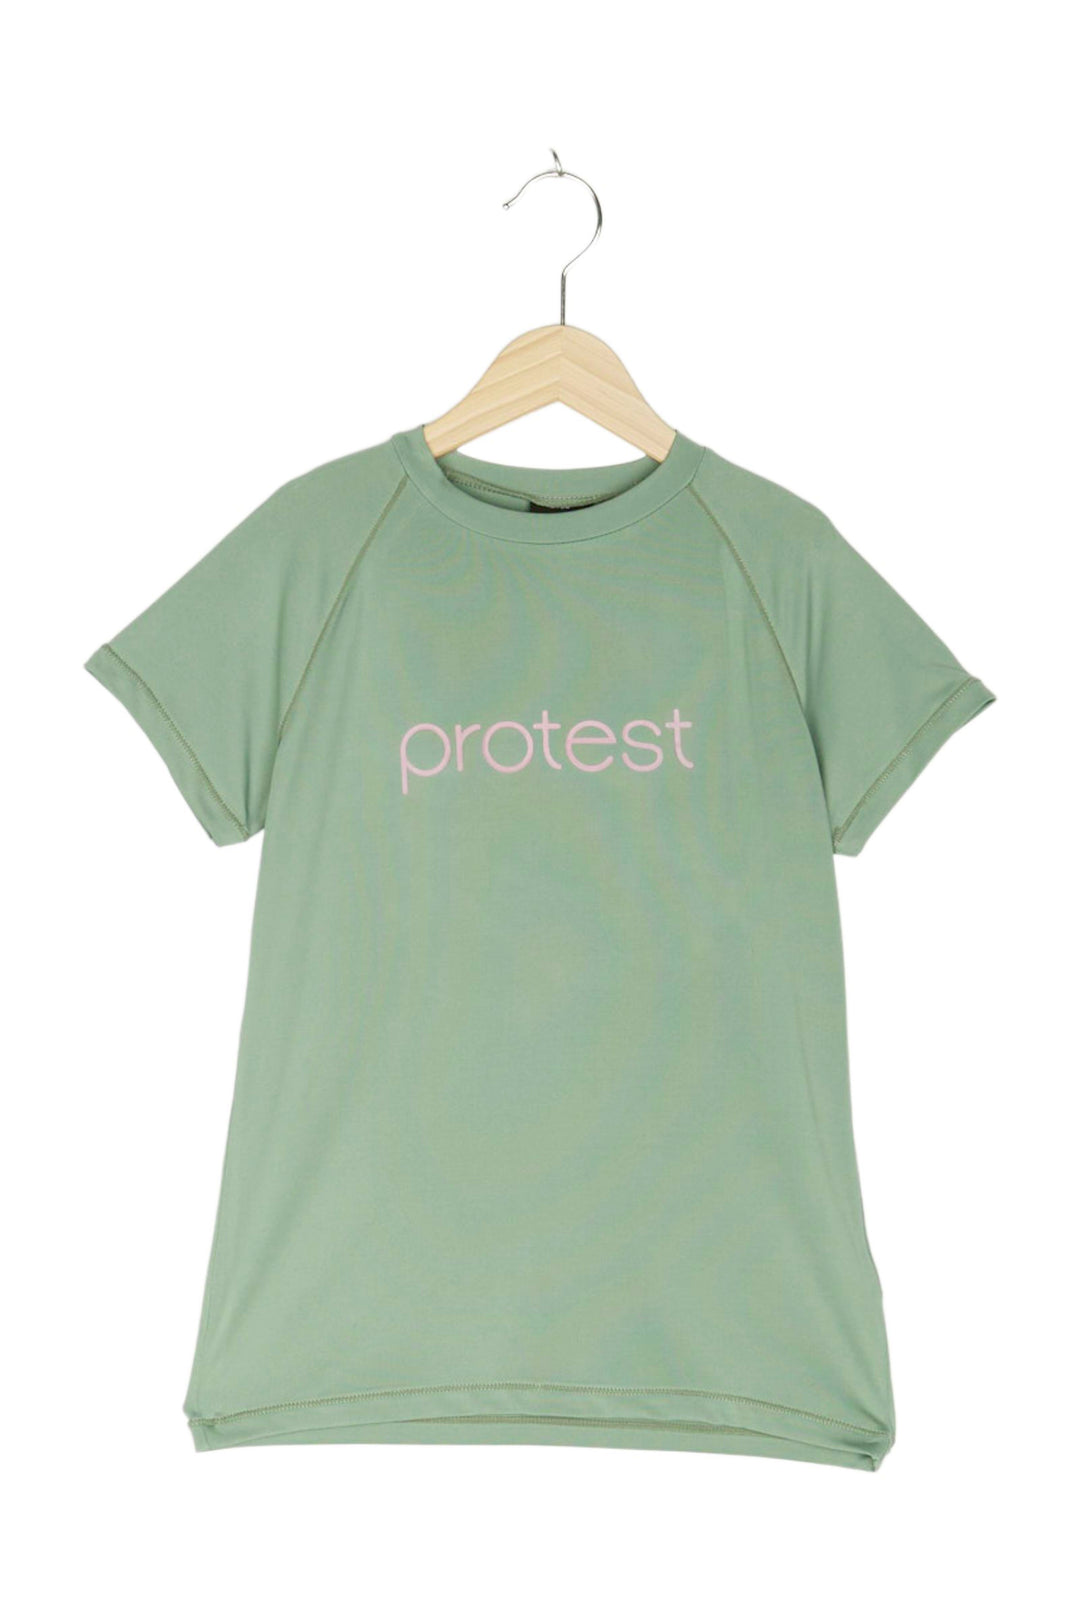 Protest Funktionsshirt für Mädchen